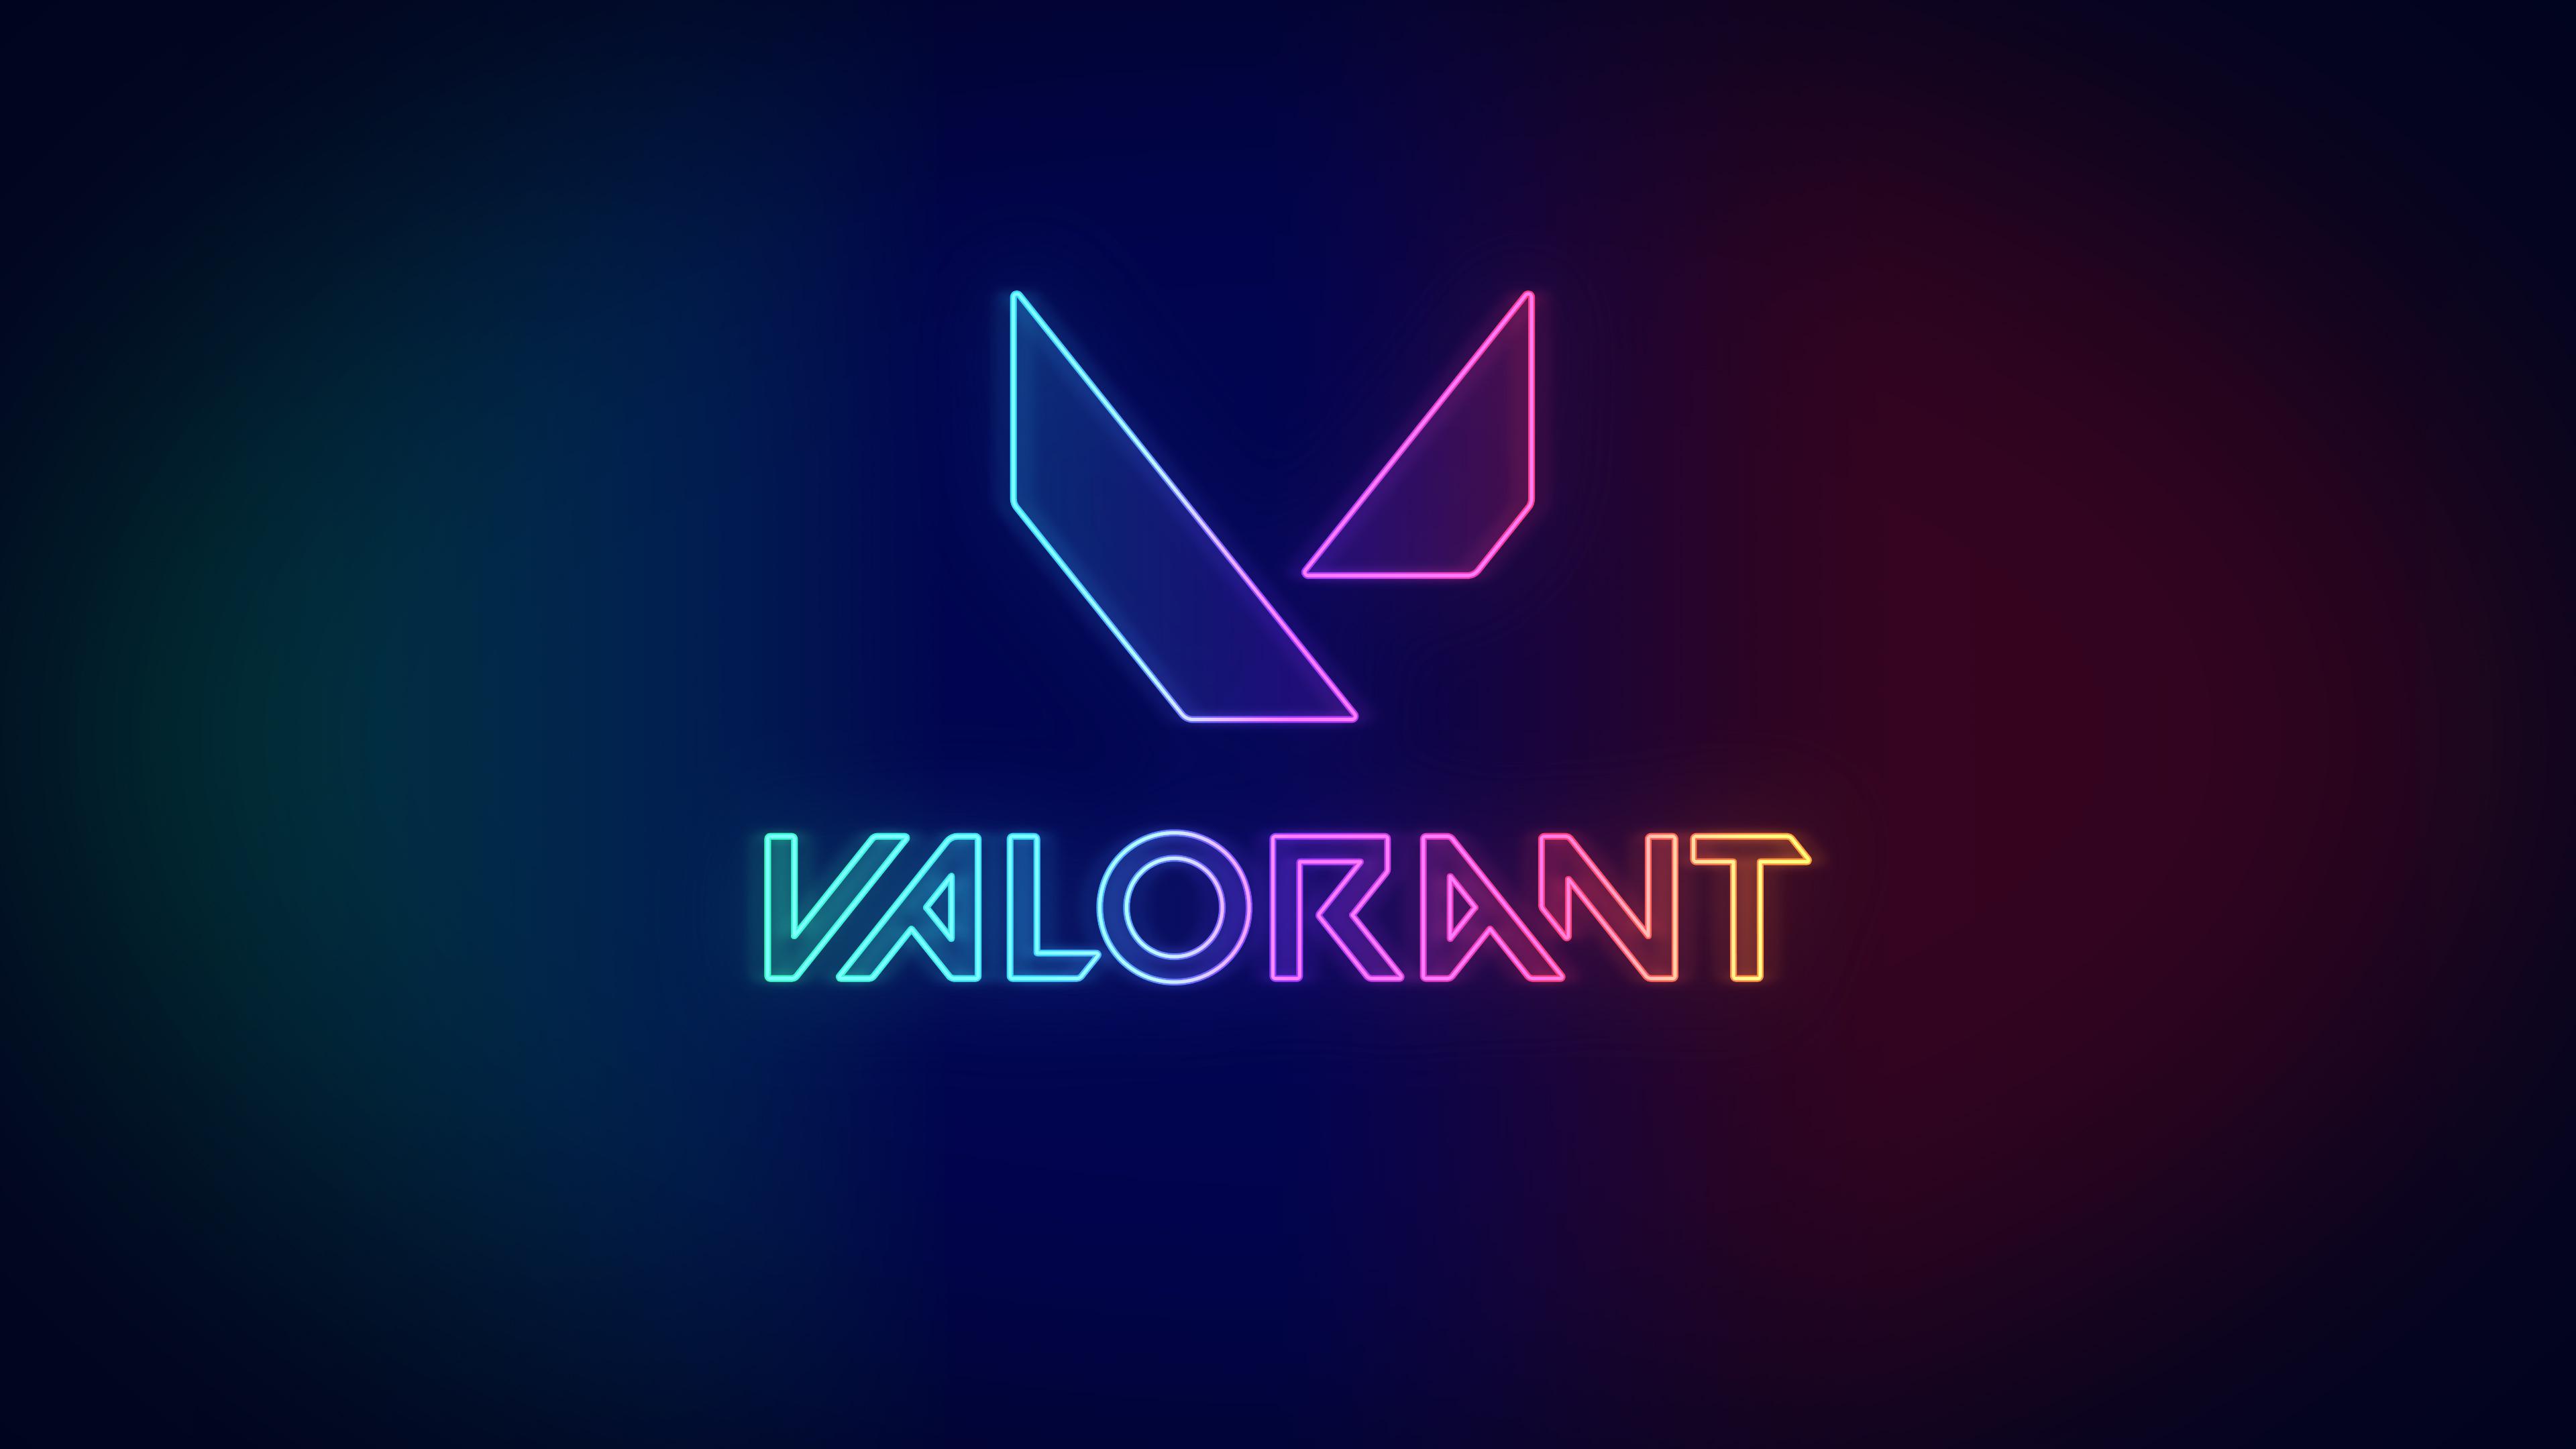 Neon Valorant Wallpapers 3840 x 2160 : VALORANT.